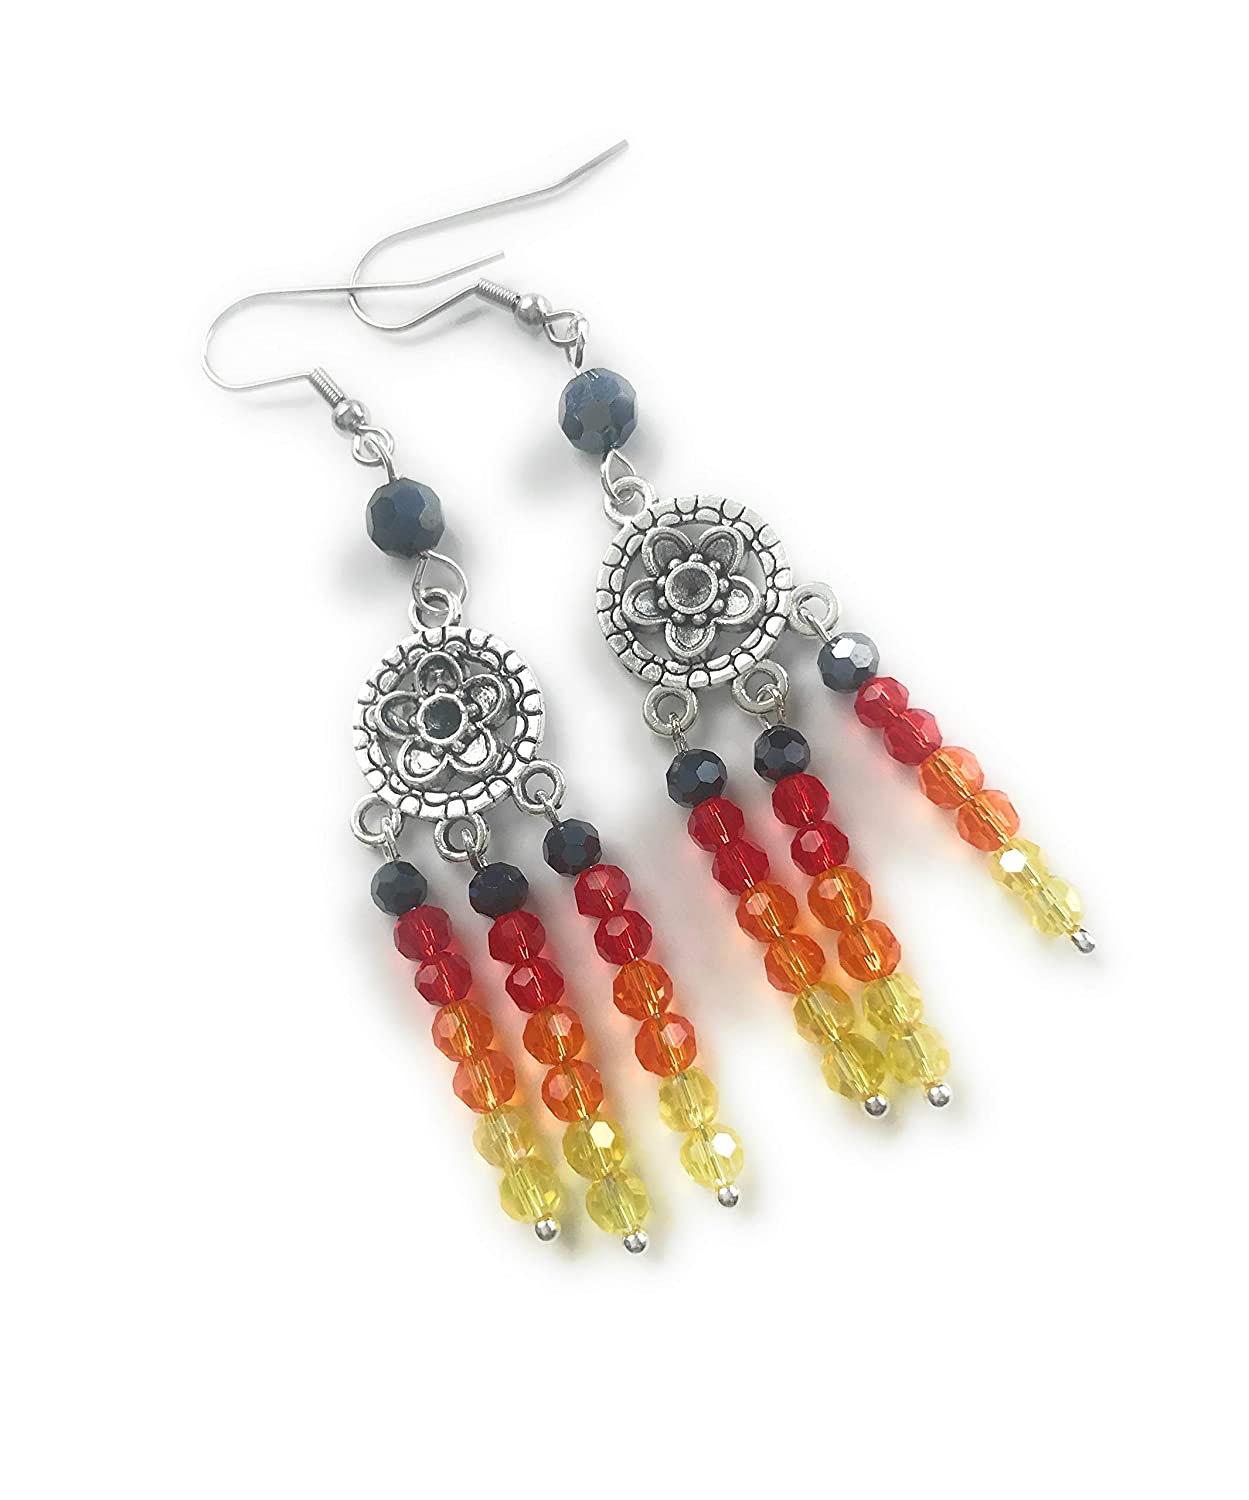 Fire Color Crystal Beaded Chandelier Earrings from Scott D Jewelry Designs